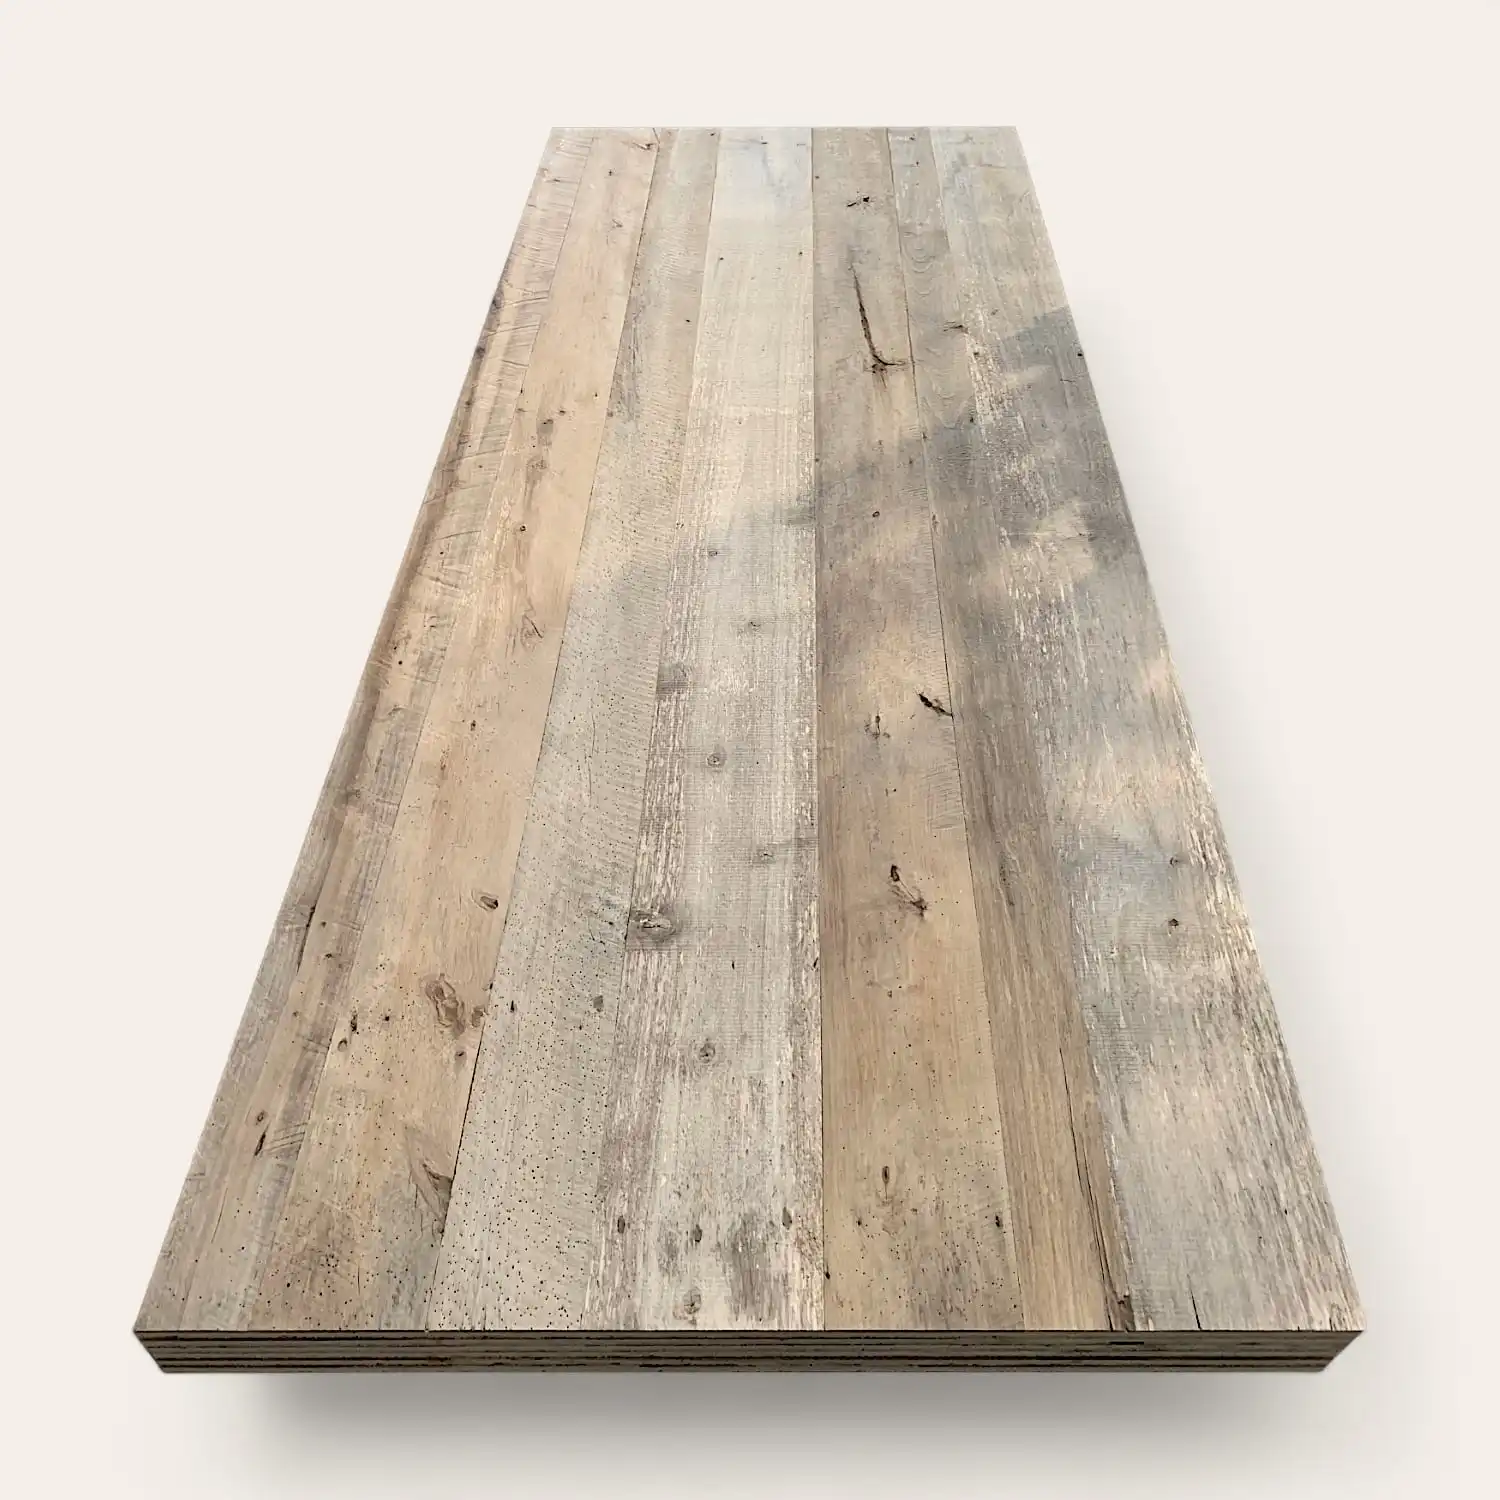  Un plateau de table rectangulaire en bois avec des planches patinées variant en couleur et en texture sur fond blanc, fabriqué à partir de panneaux de vieux bois. 